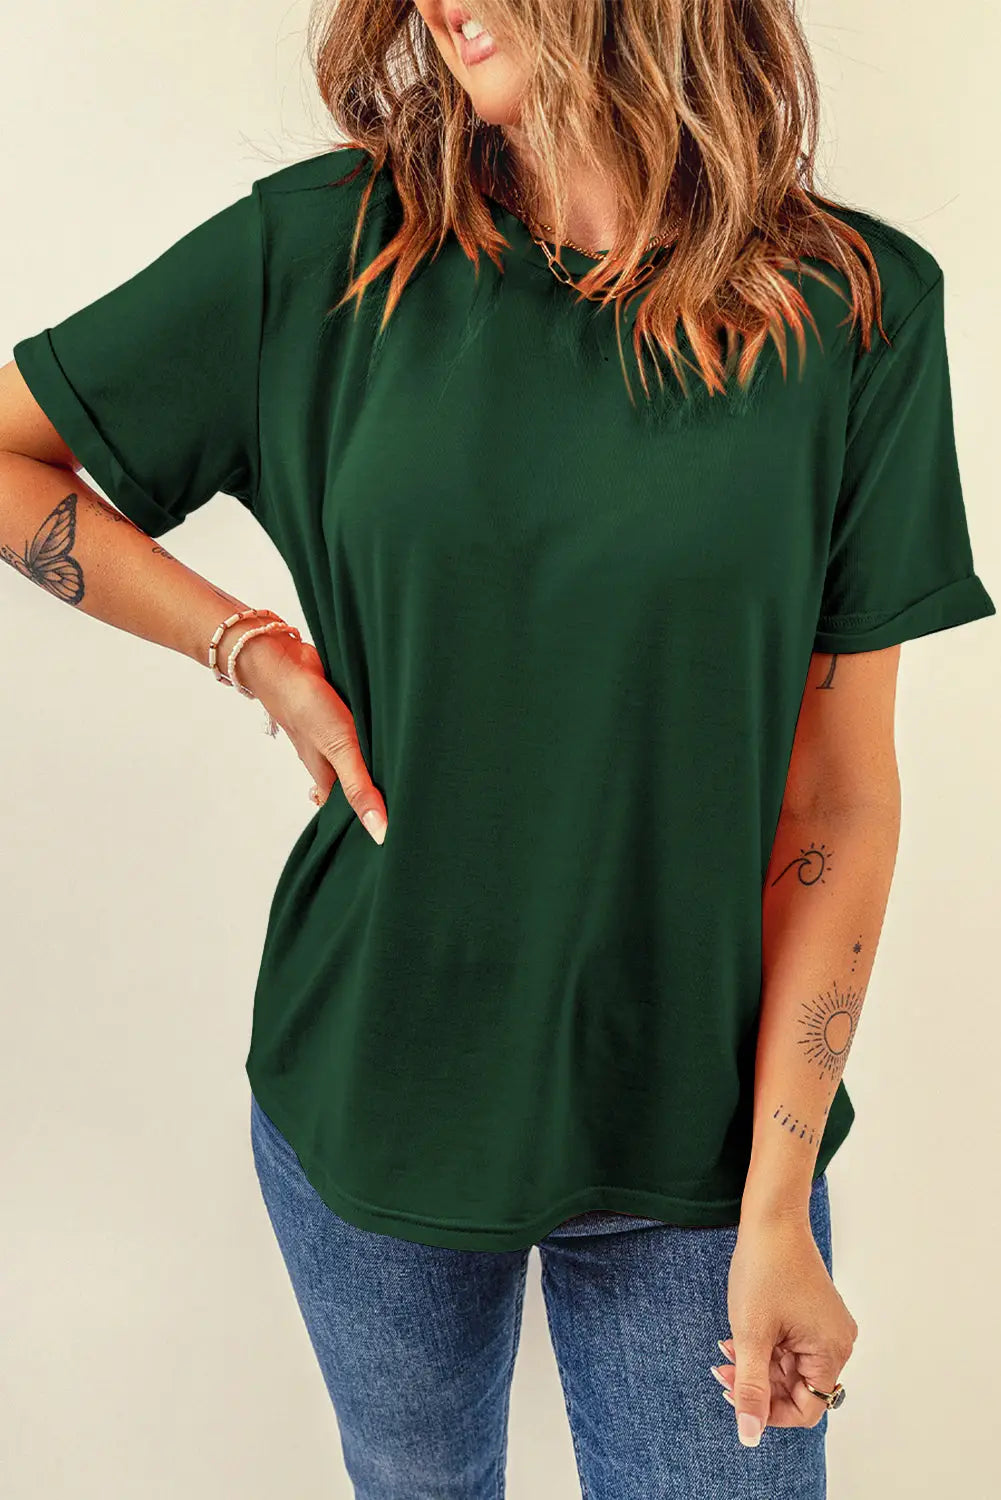 Khaki casual plain crew neck tee - green / s / 62% polyester + 32% cotton + 6% elastane - t-shirts